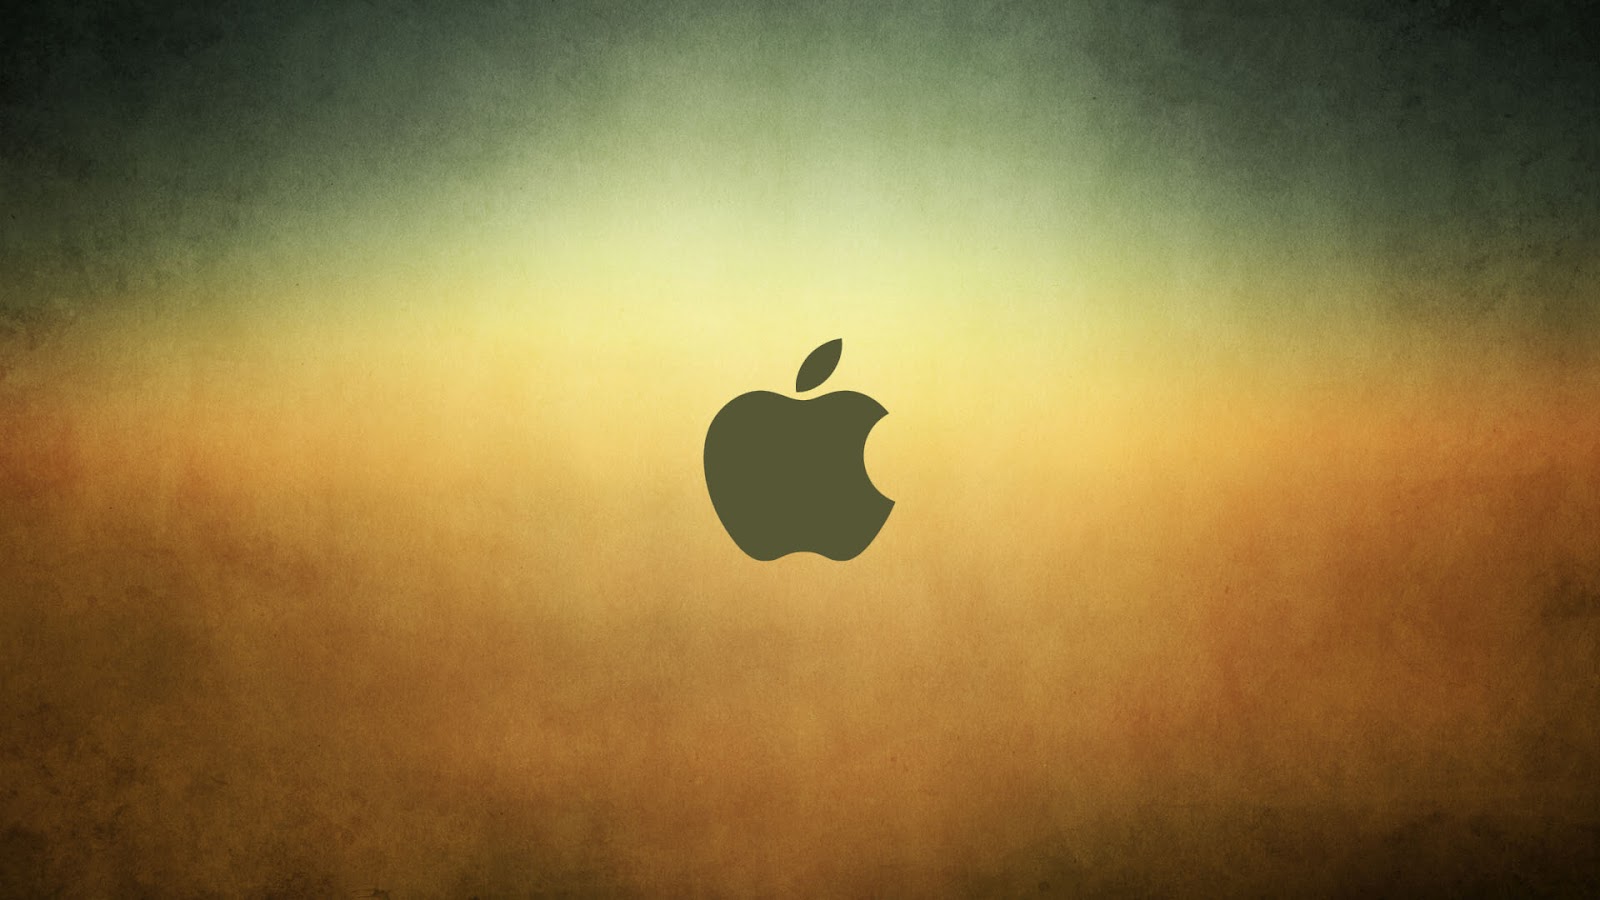 Apple wallpaper hd 1080p: apple mac wallpapers hd